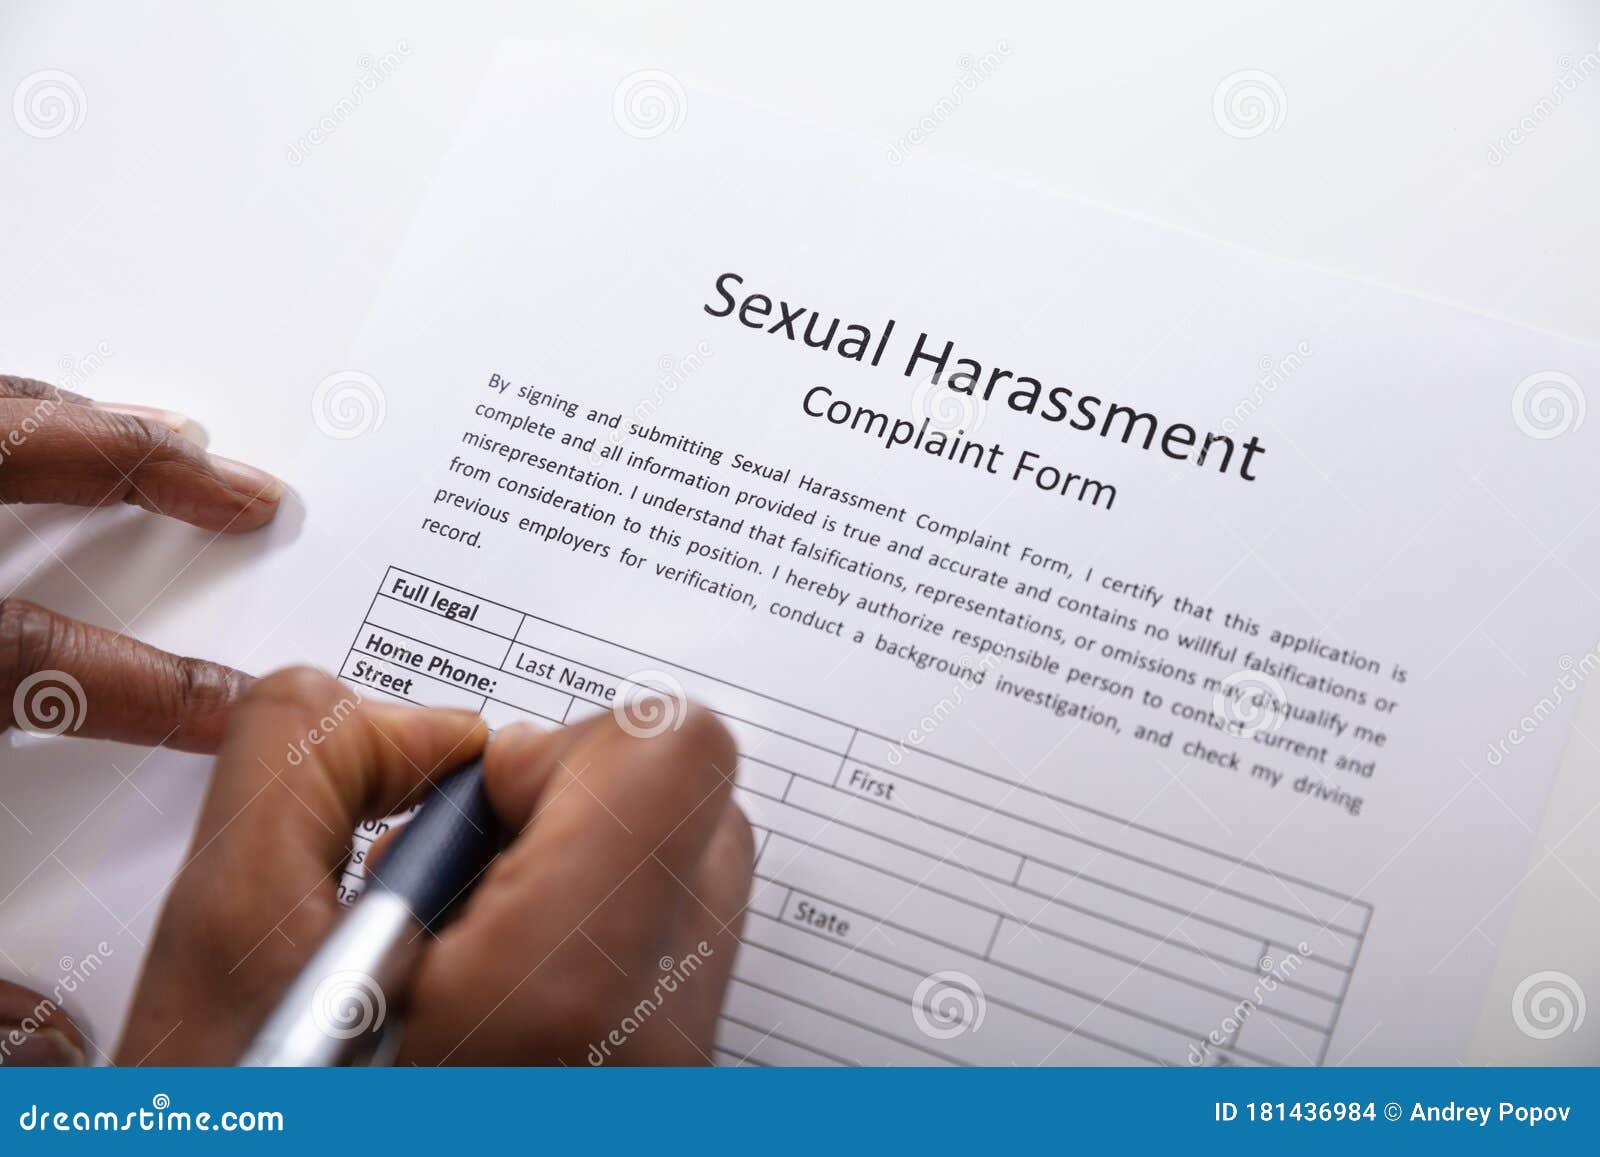 Formulario de denuncia de acoso sexual con mano humana con lápiz